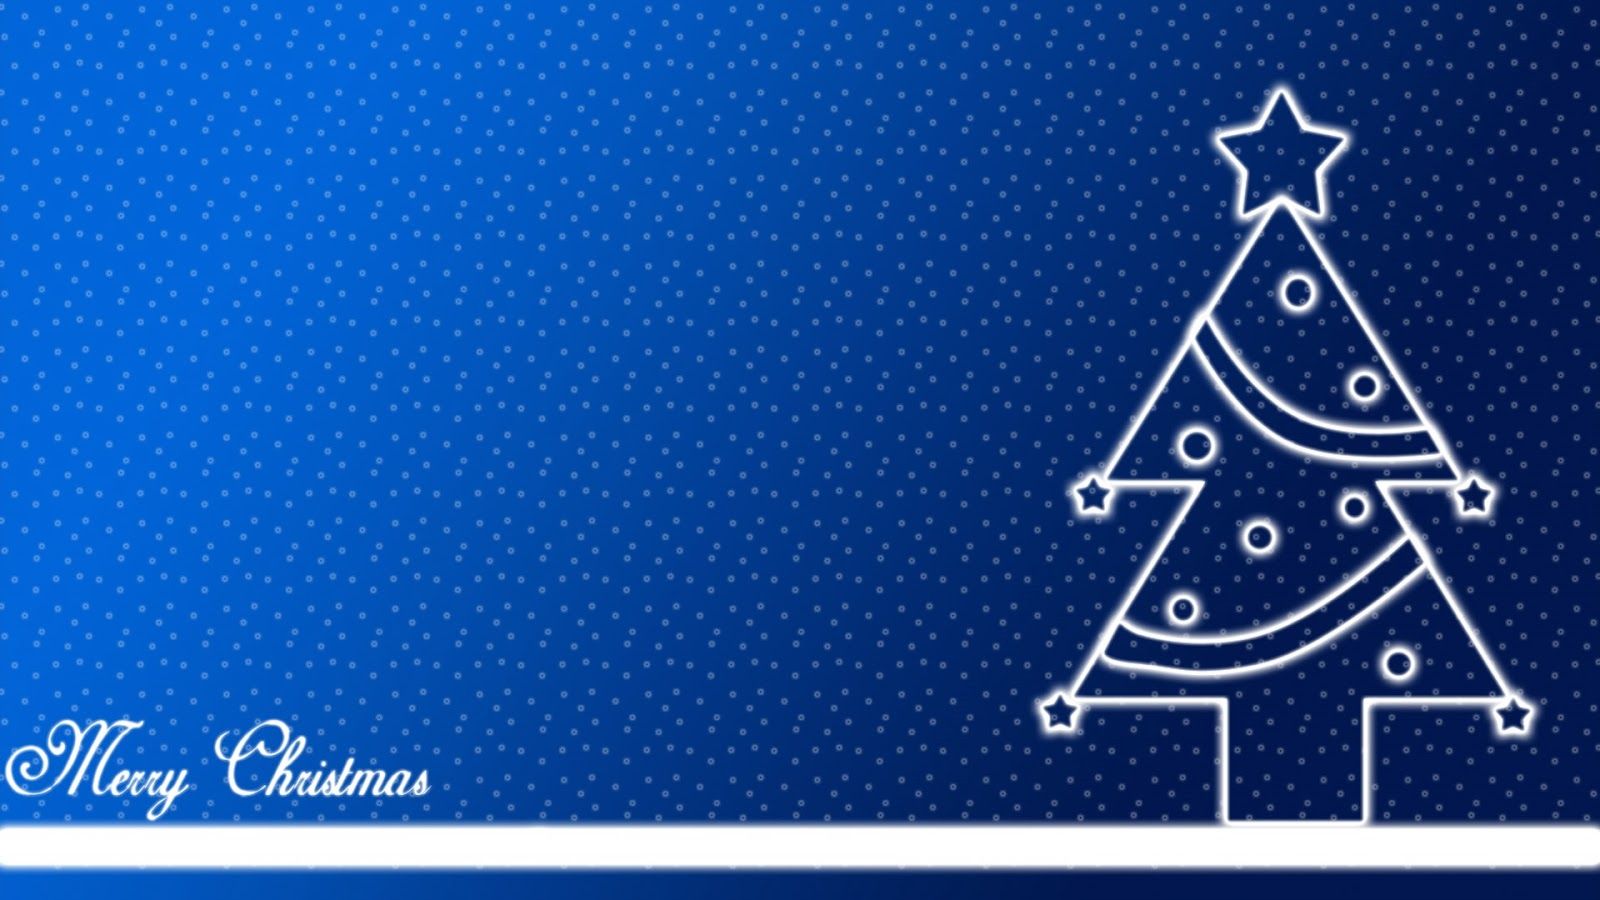 HoraBuena.com: Feliz Navidad! de Navidad arbolito dibujado en fondo azul